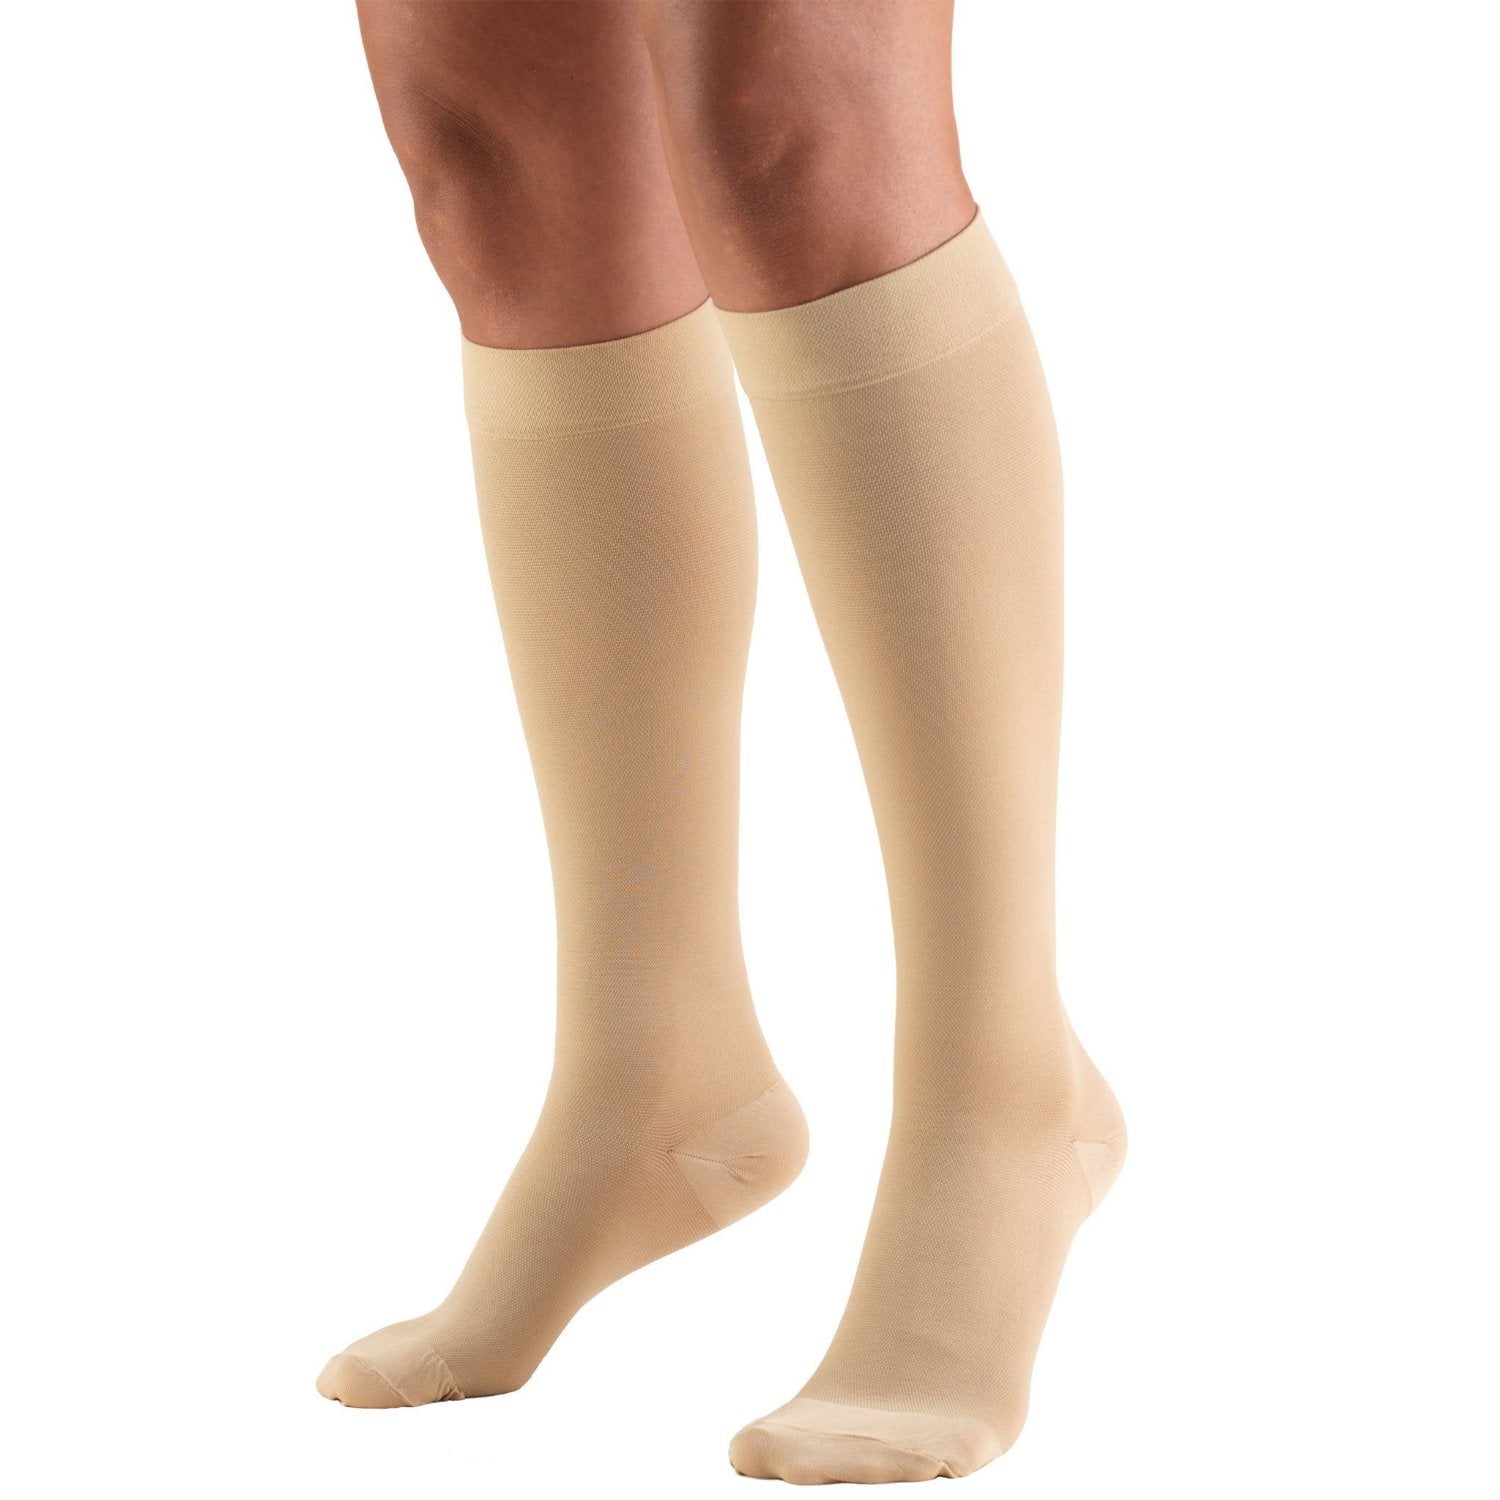 Compression Socks Dvtcompression Socks For Varicose Veins & Leg